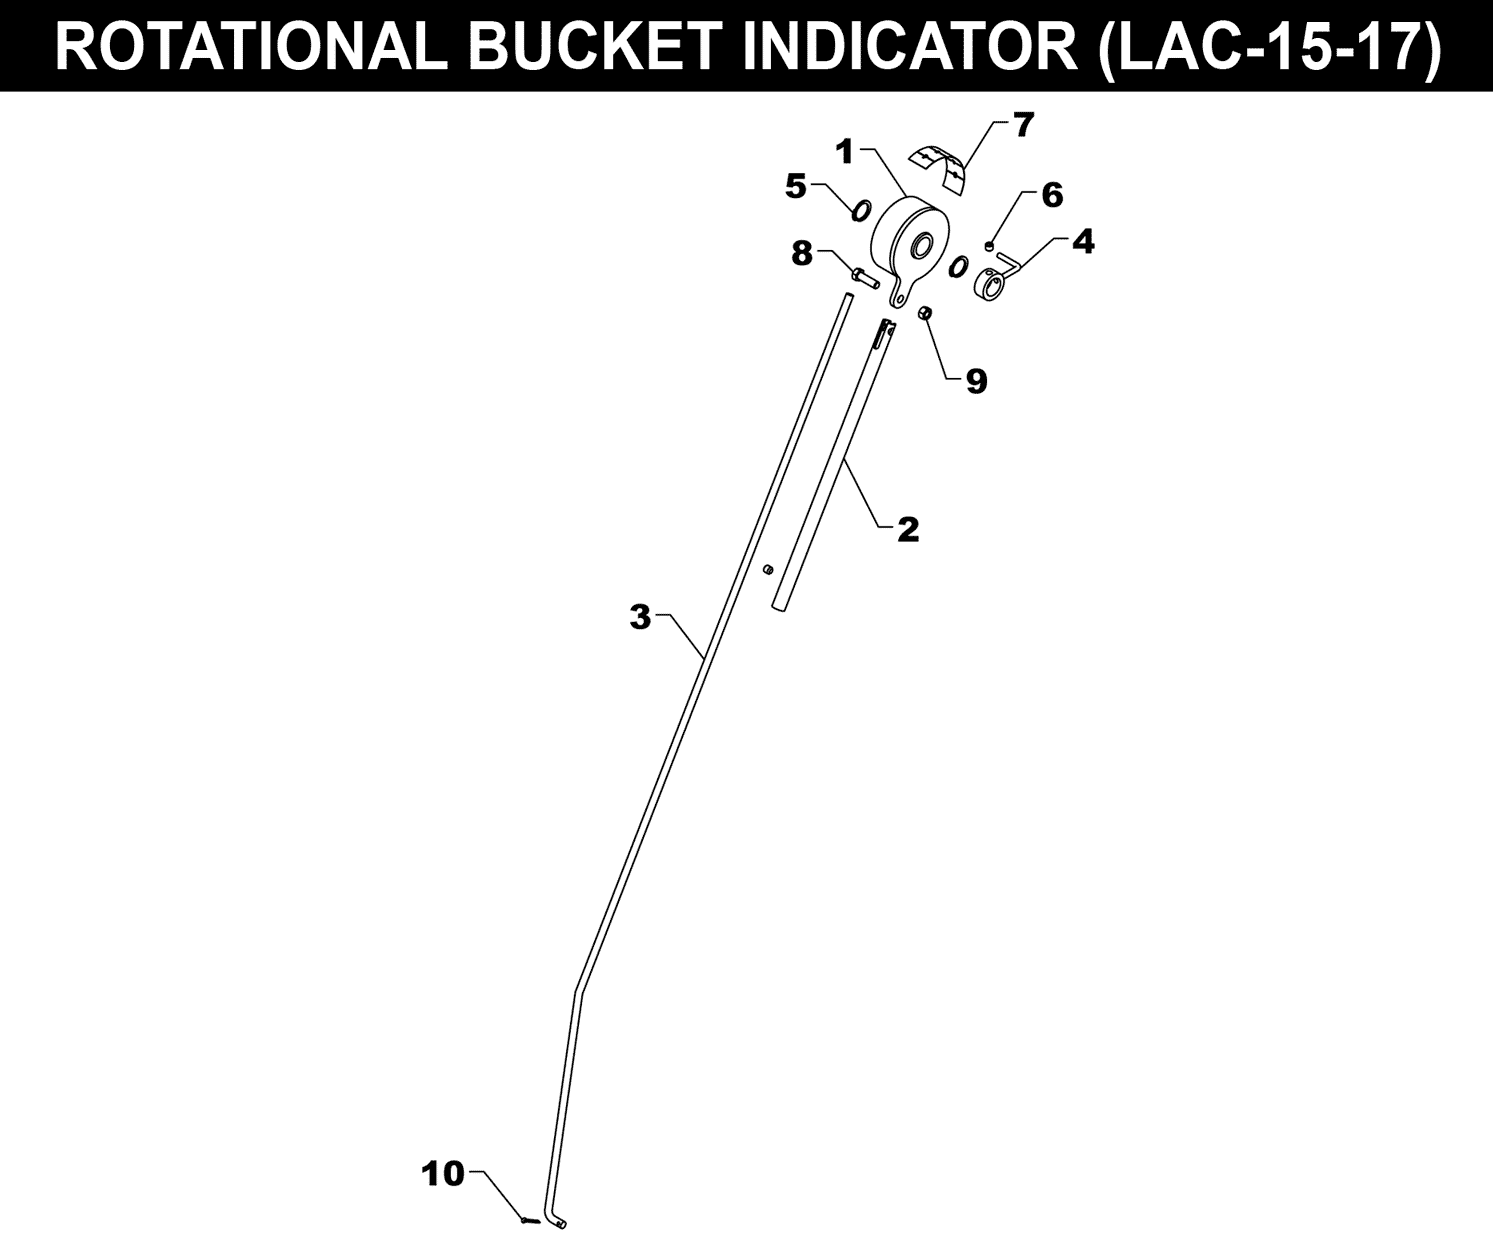 LAC-15-17